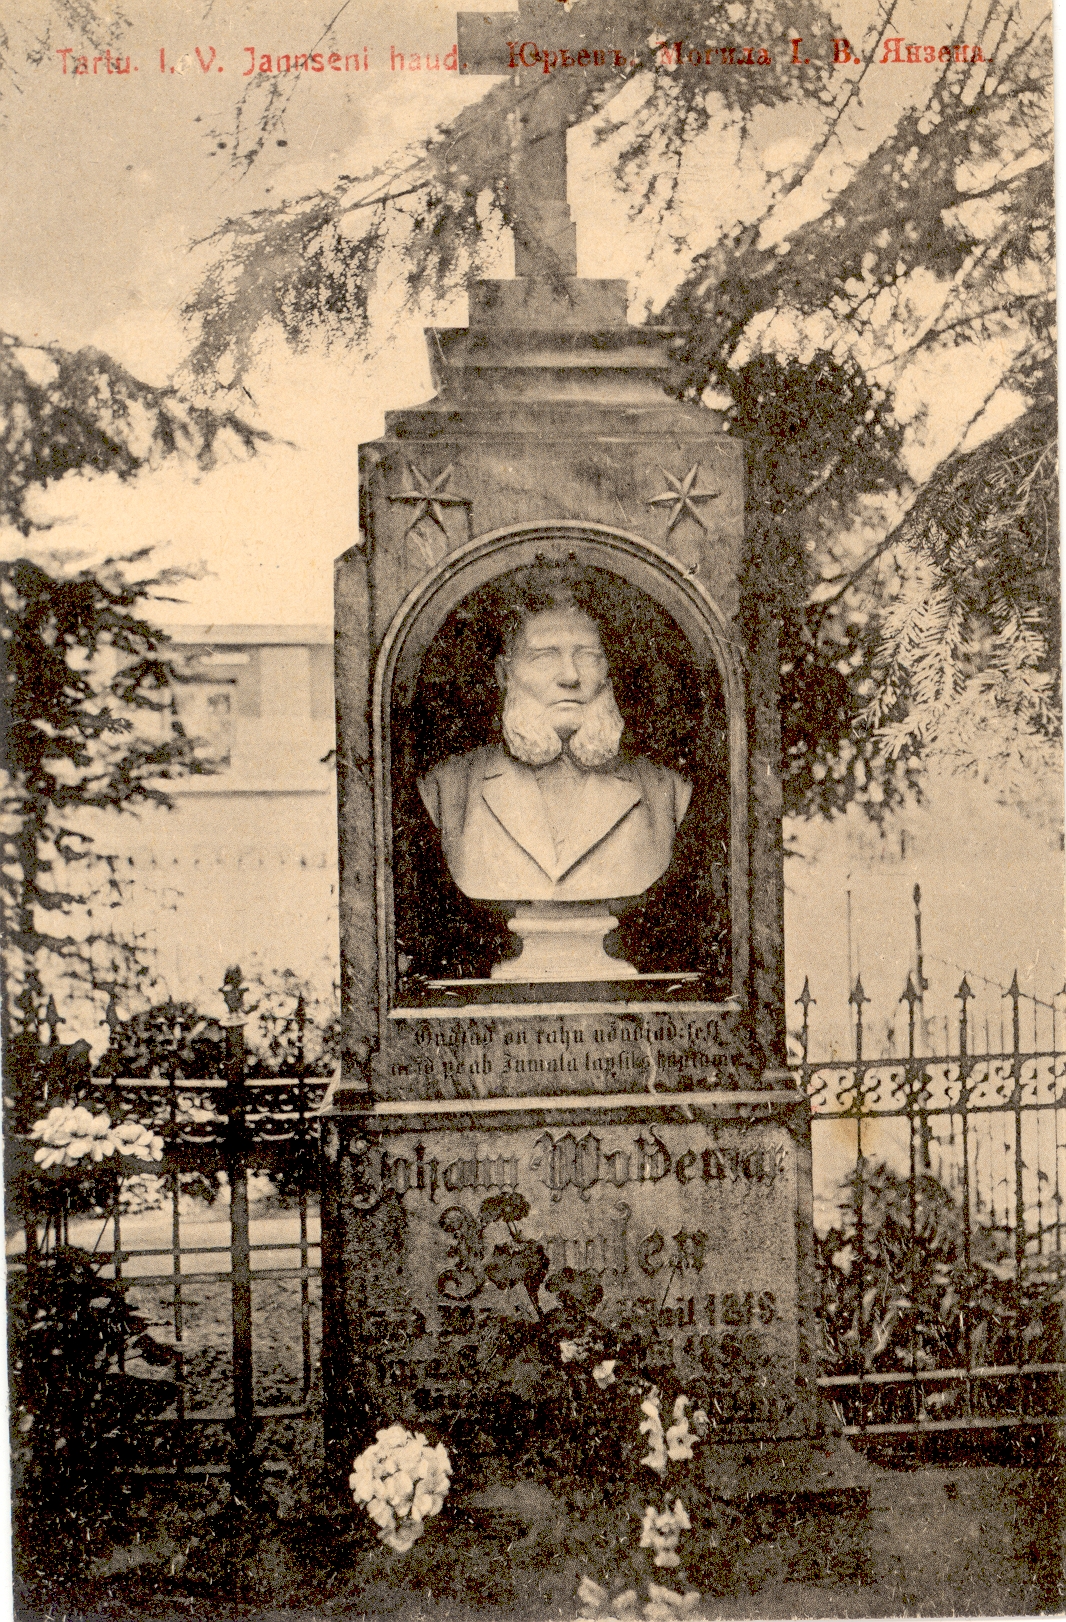 J. W. Jannsen's grave on the cemetery of Tartu Maarja